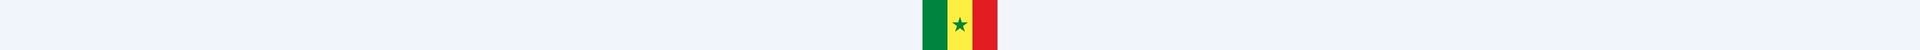 Drapeau Sénégal pour du rayonnage Sénégal et rack Sénégal